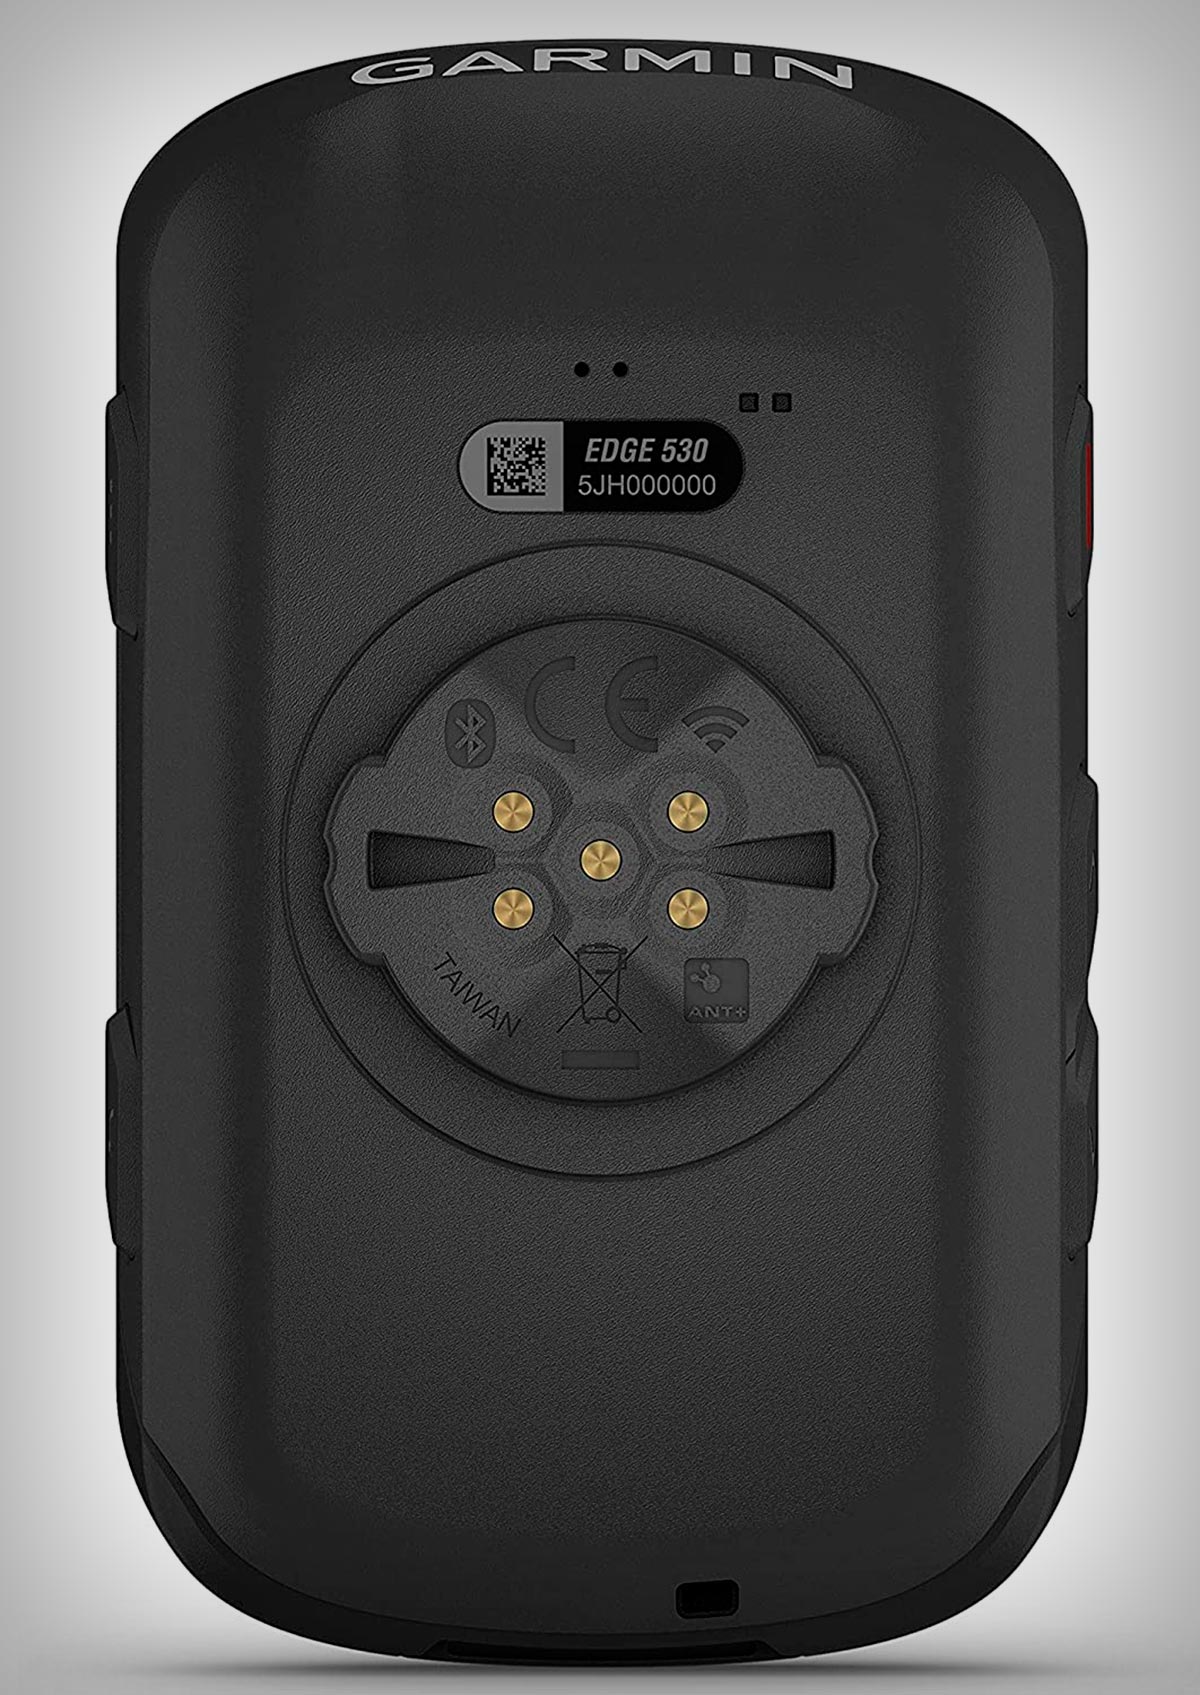 El Garmin Edge 530, el ciclocomputador con GPS más utilizado del mundo, a su mejor precio en Amazon